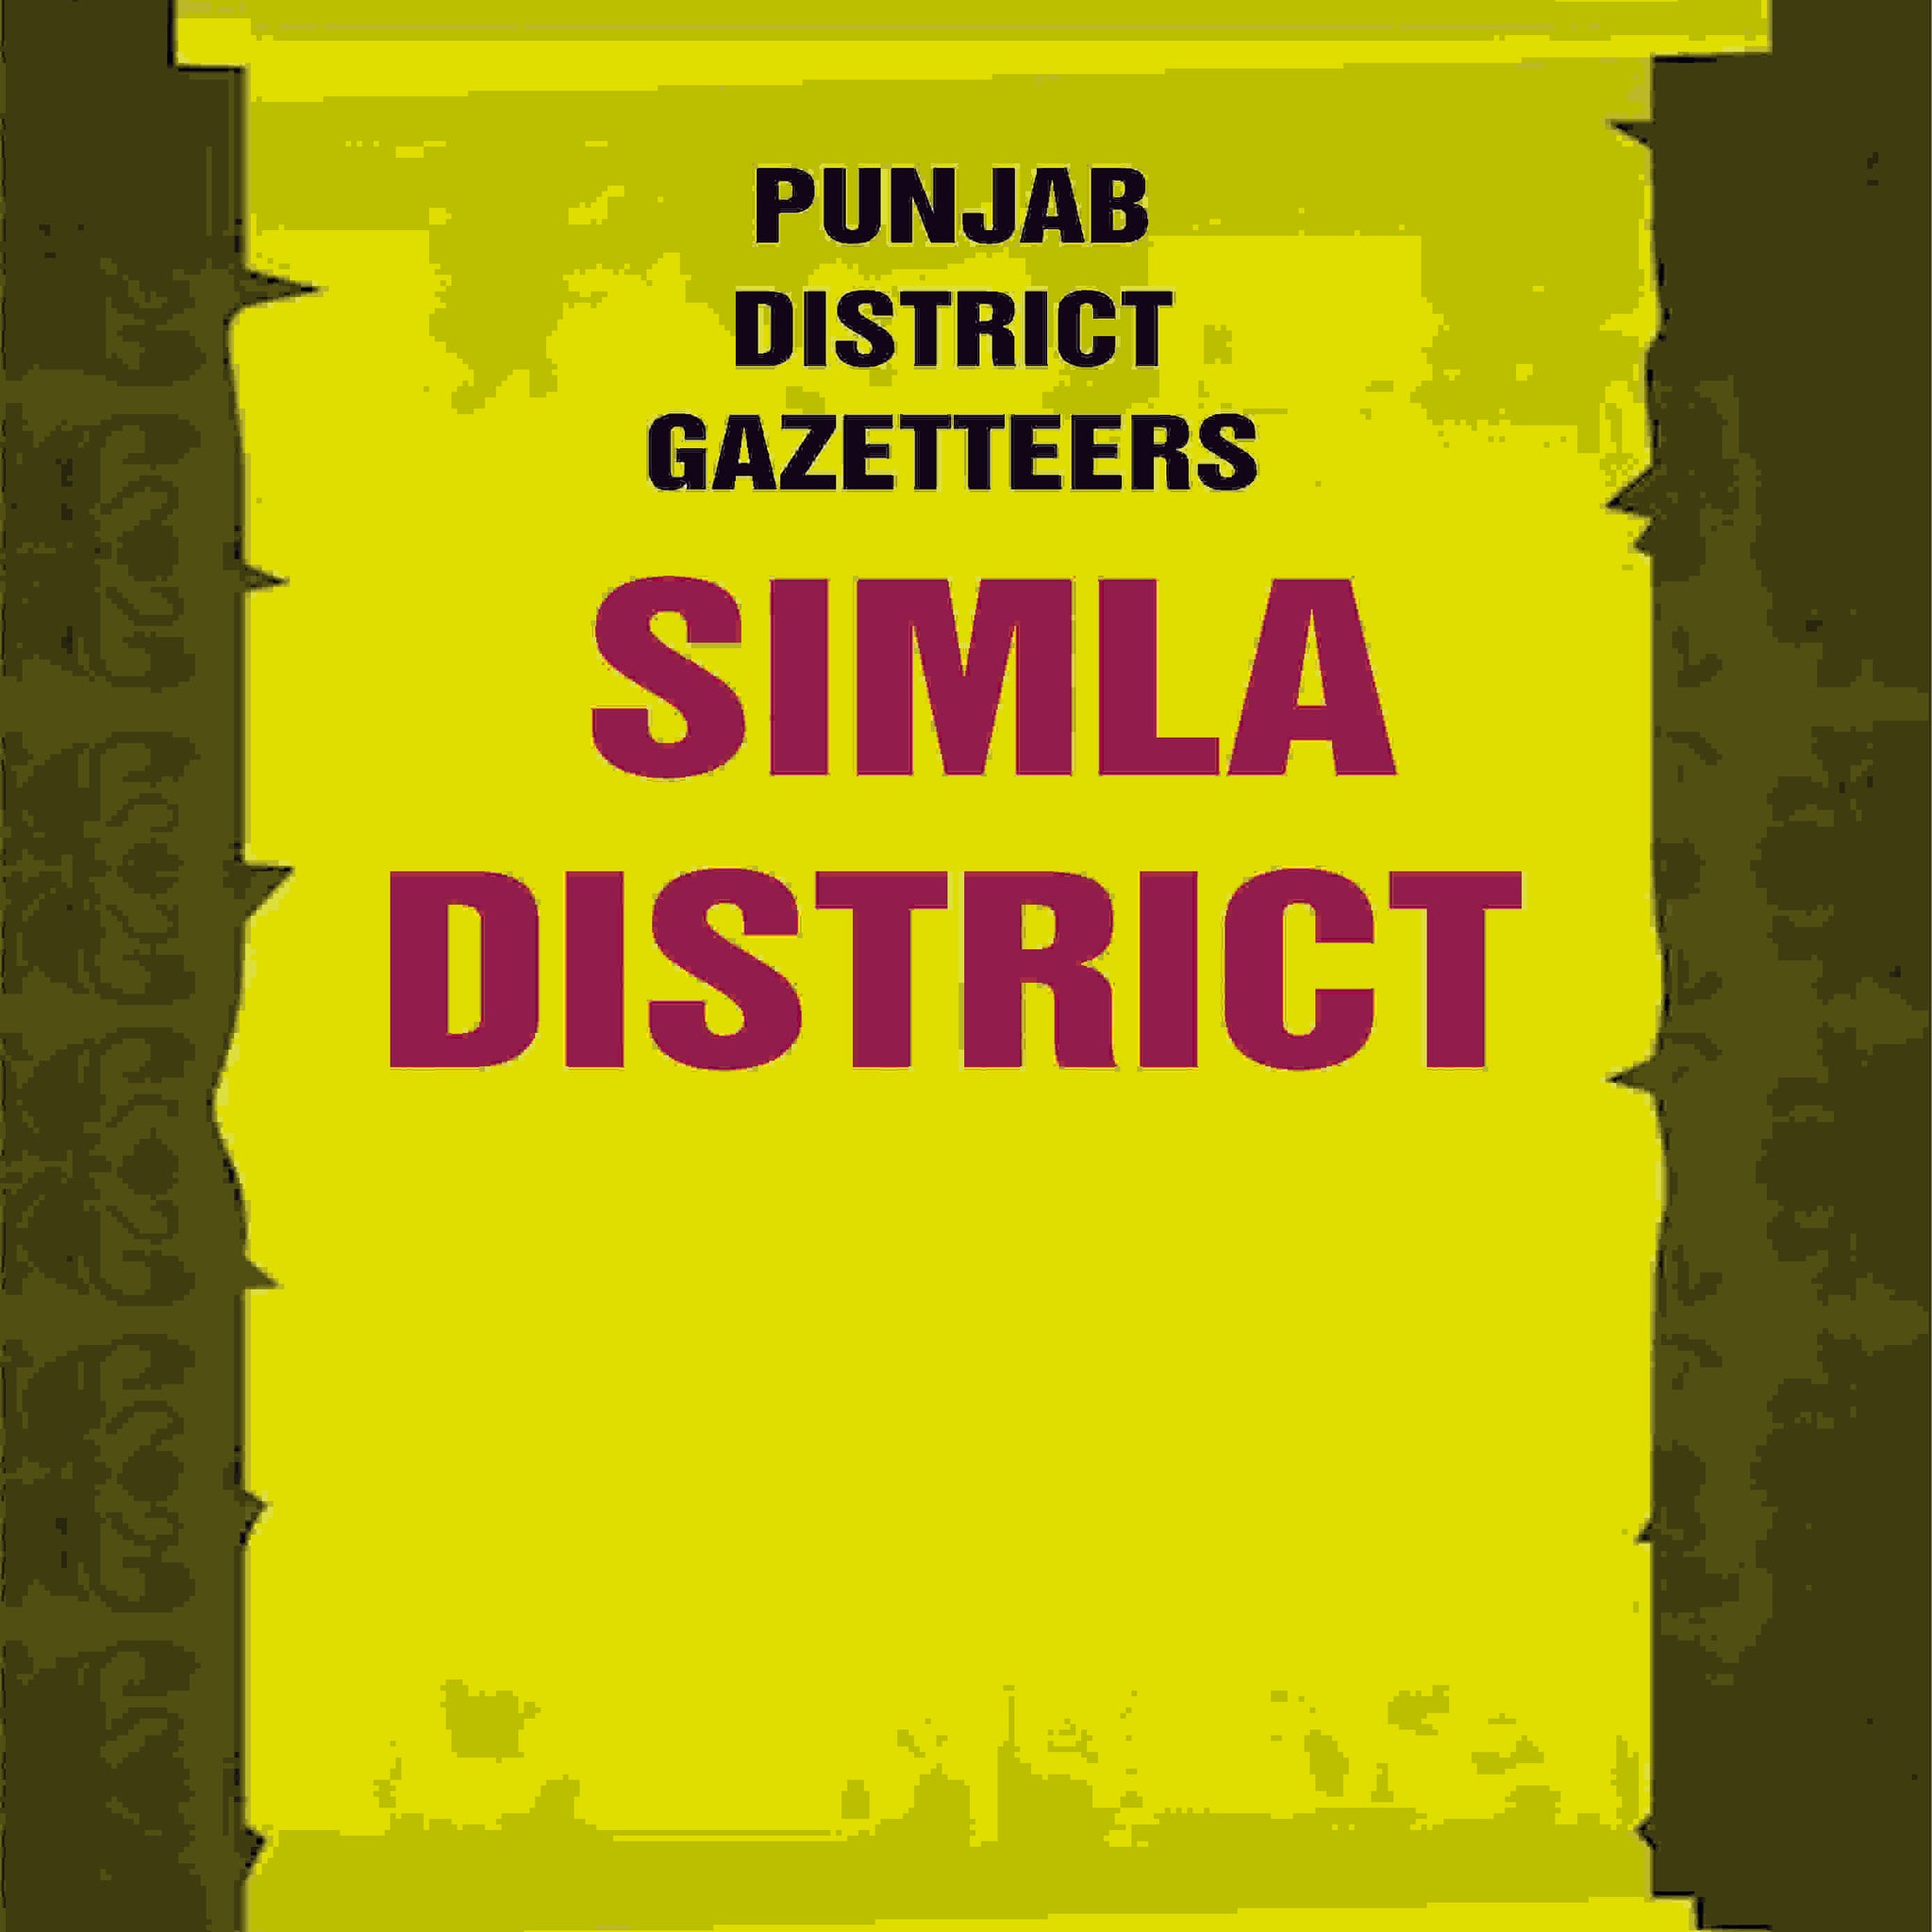 Punjab District Gazetteers: Simla District